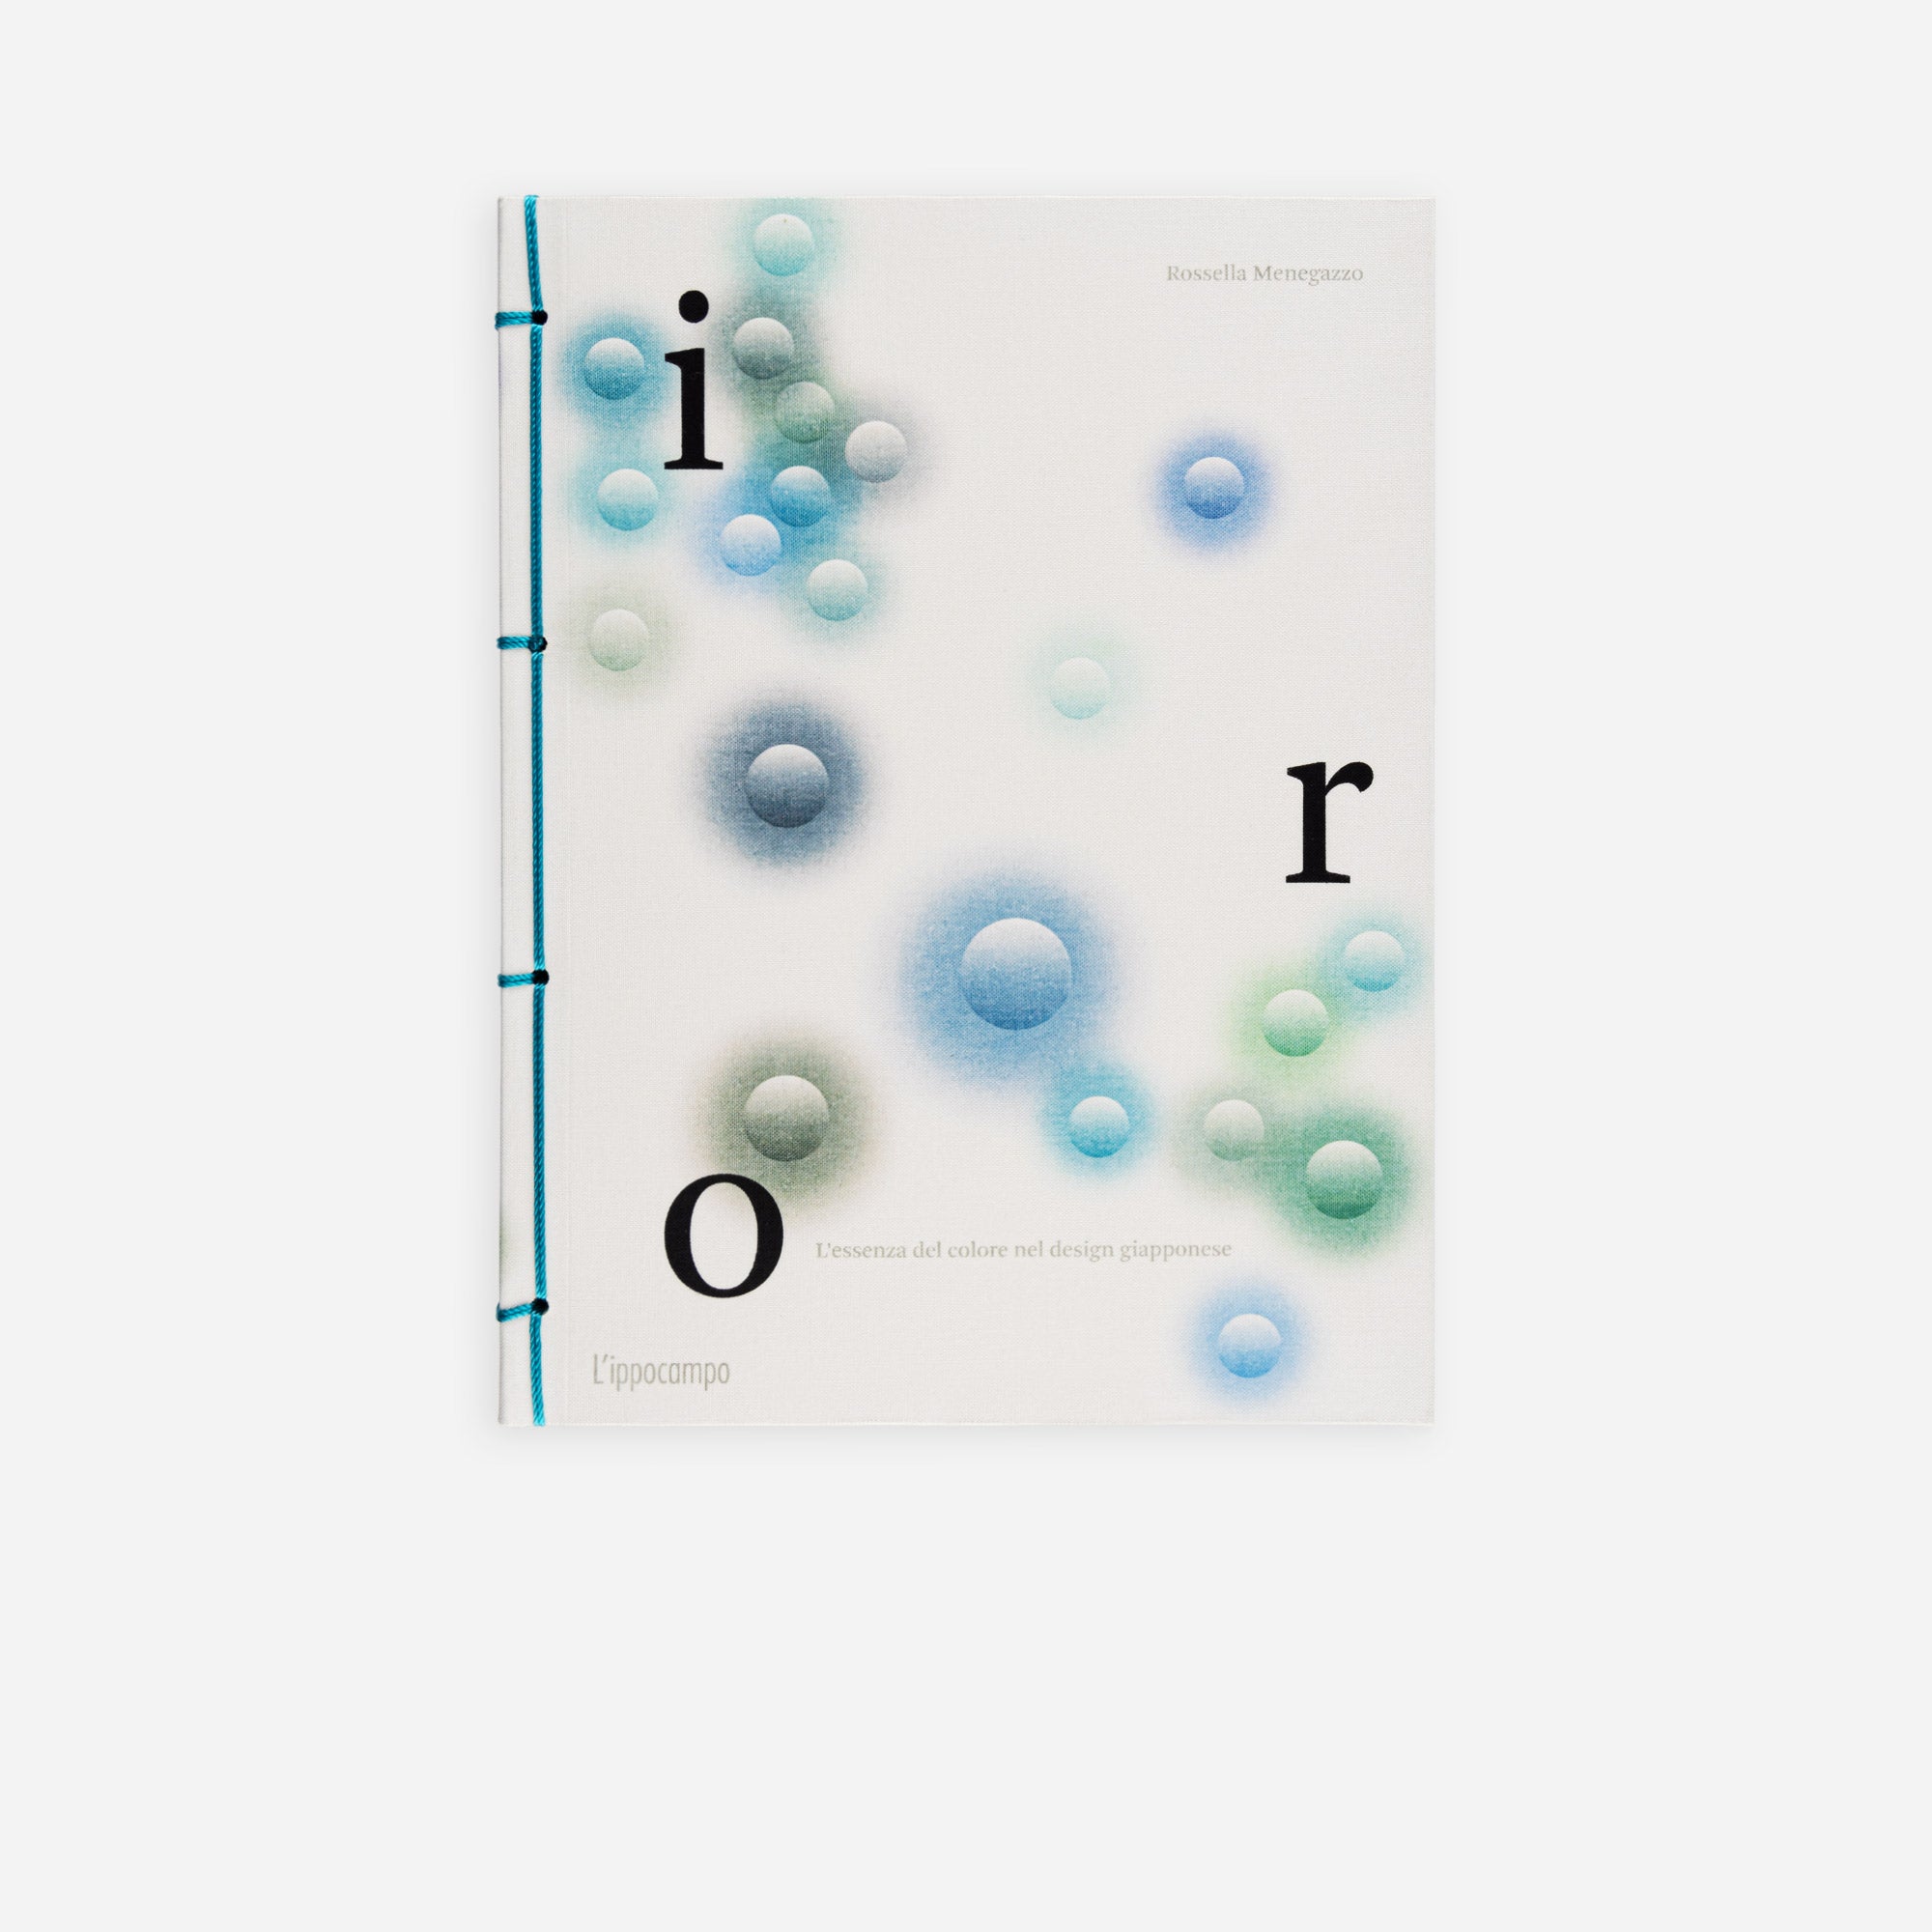 IRO - L'essenza del colore nel design giapponese